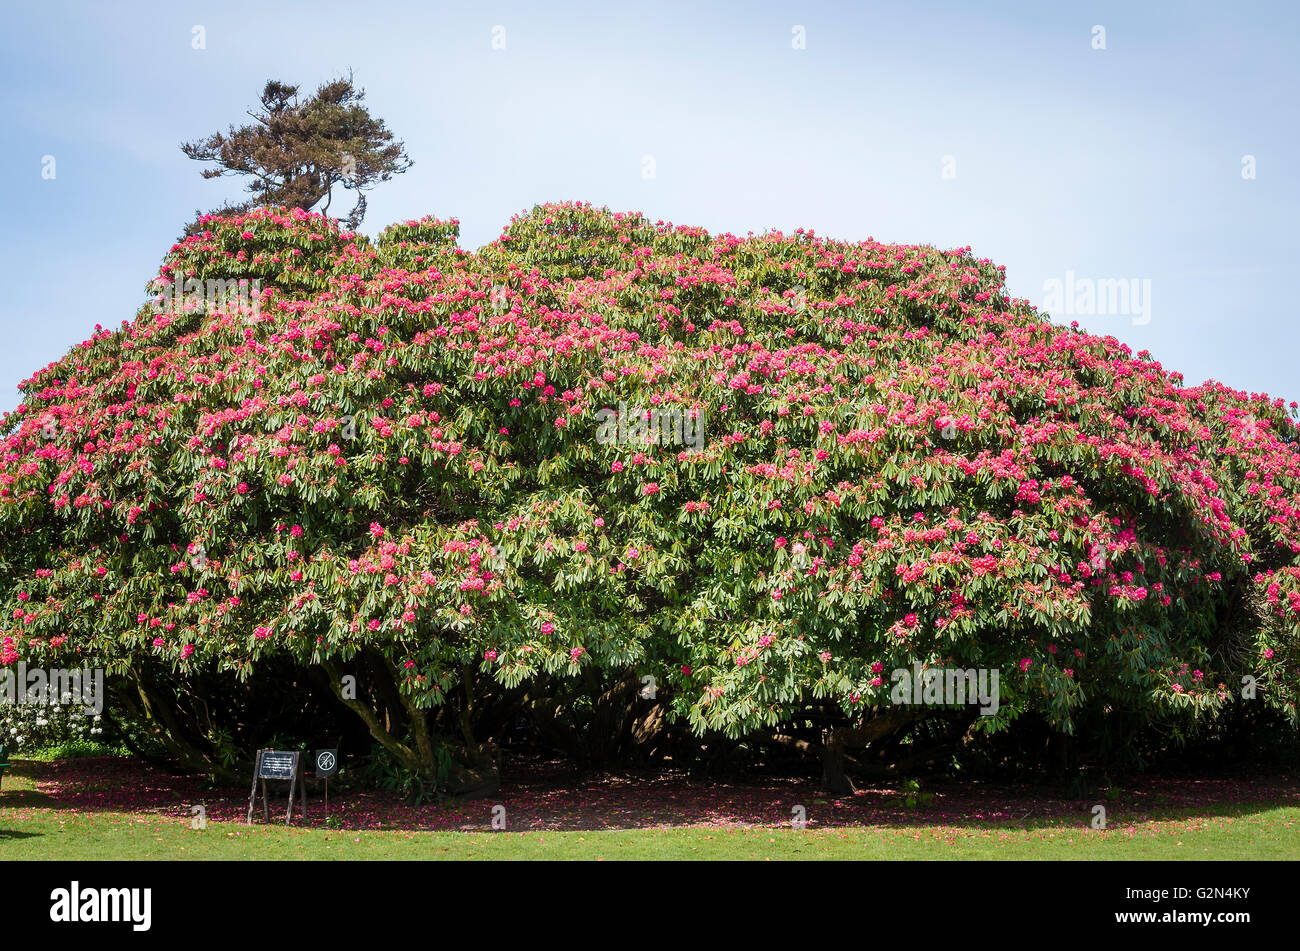 Rhododendron Cornish rojo sobre verde de la Flora en Heligan Cornwall UK Foto de stock